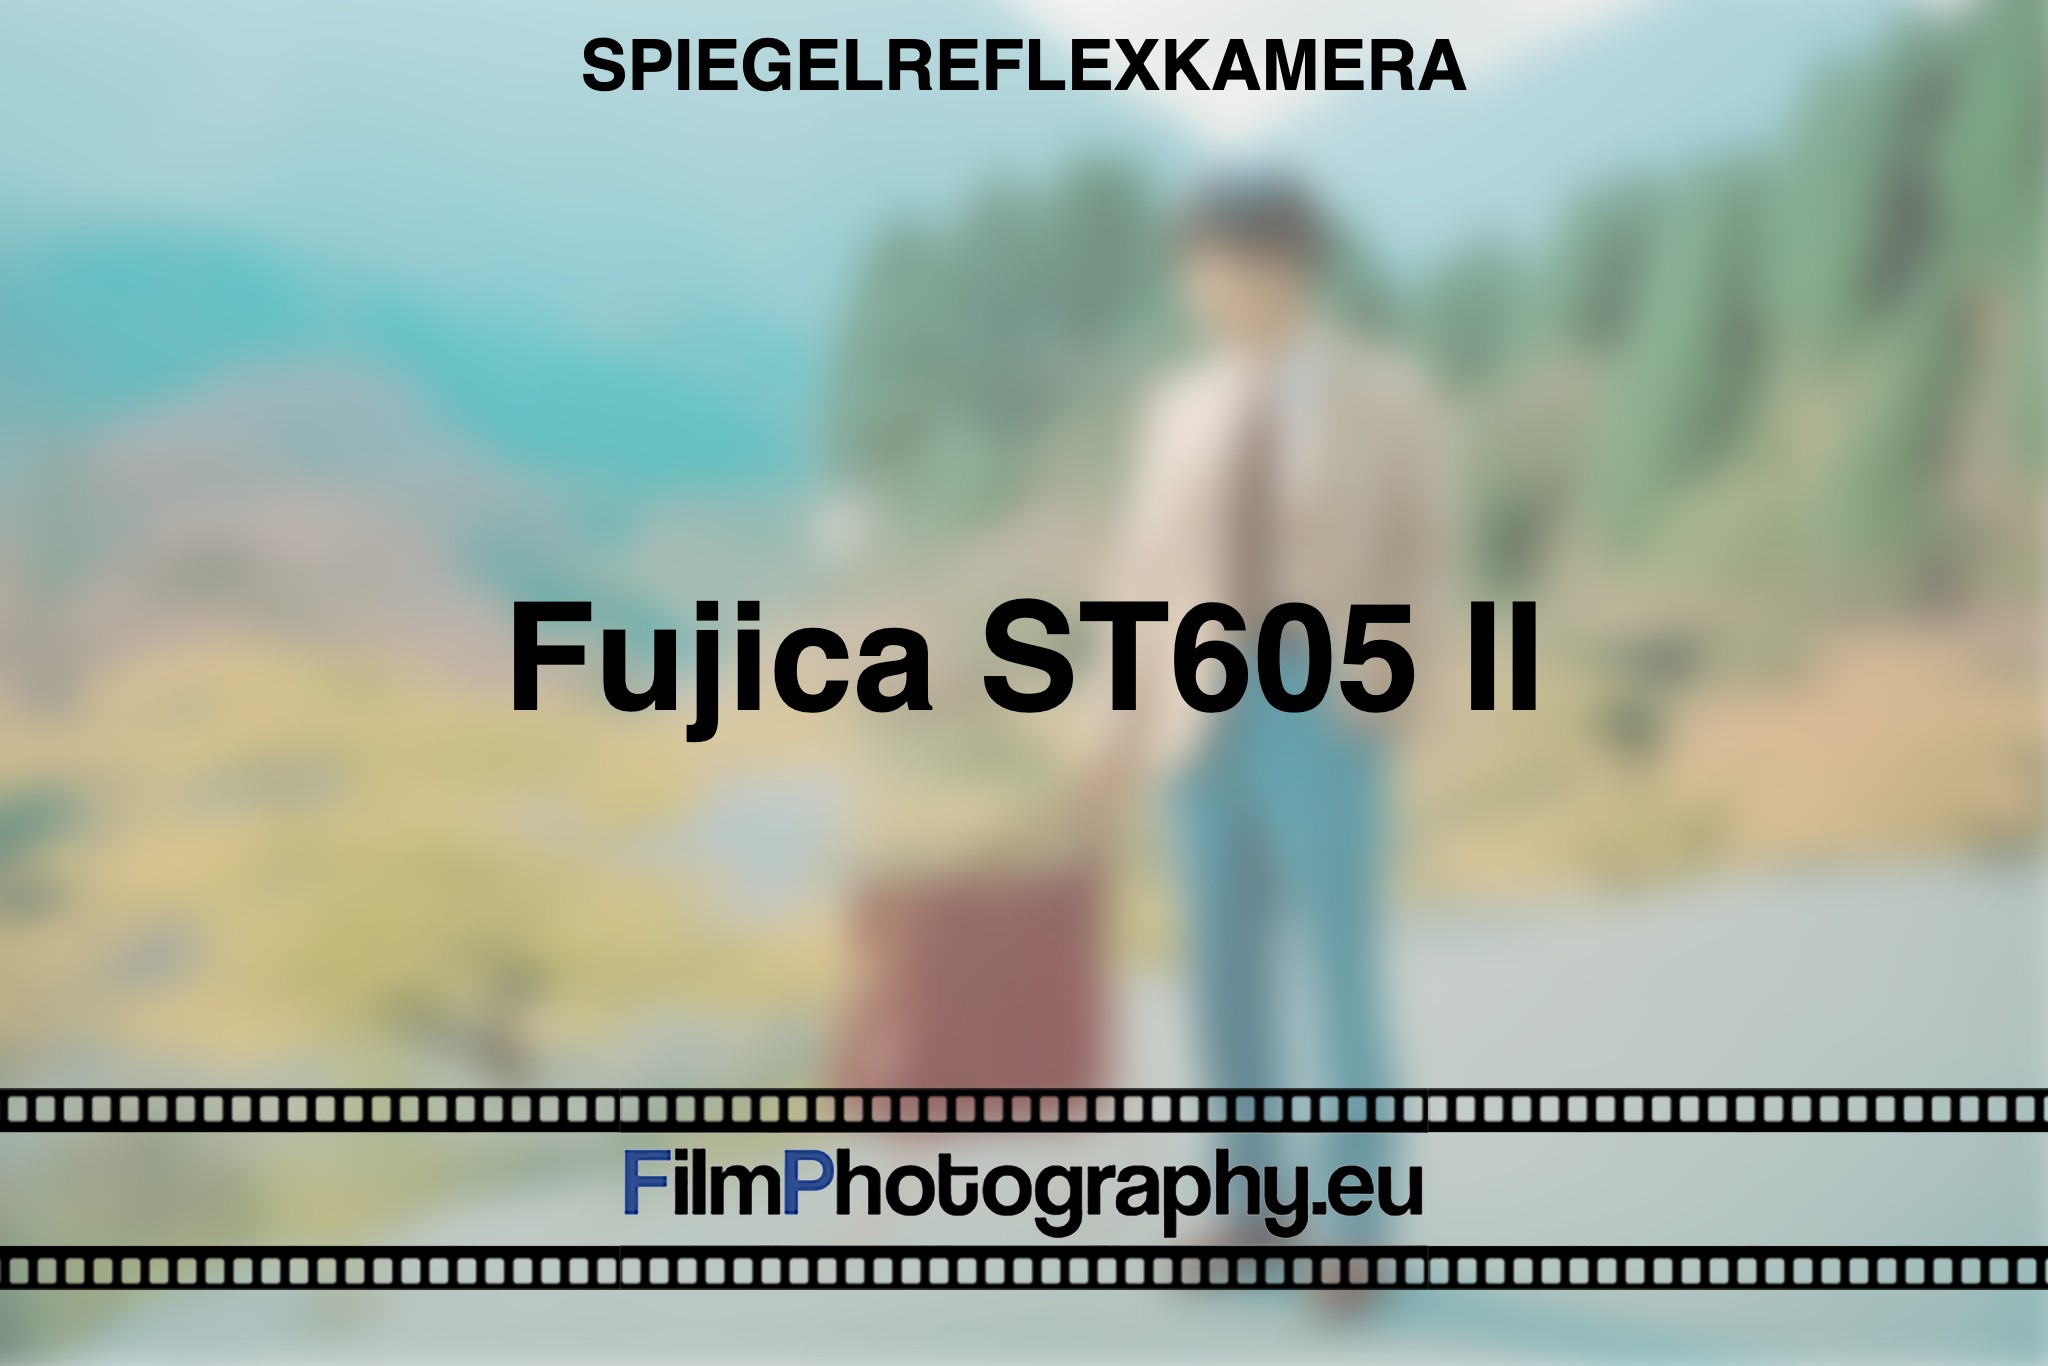 fujica-st605-ii-spiegelreflexkamera-bnv